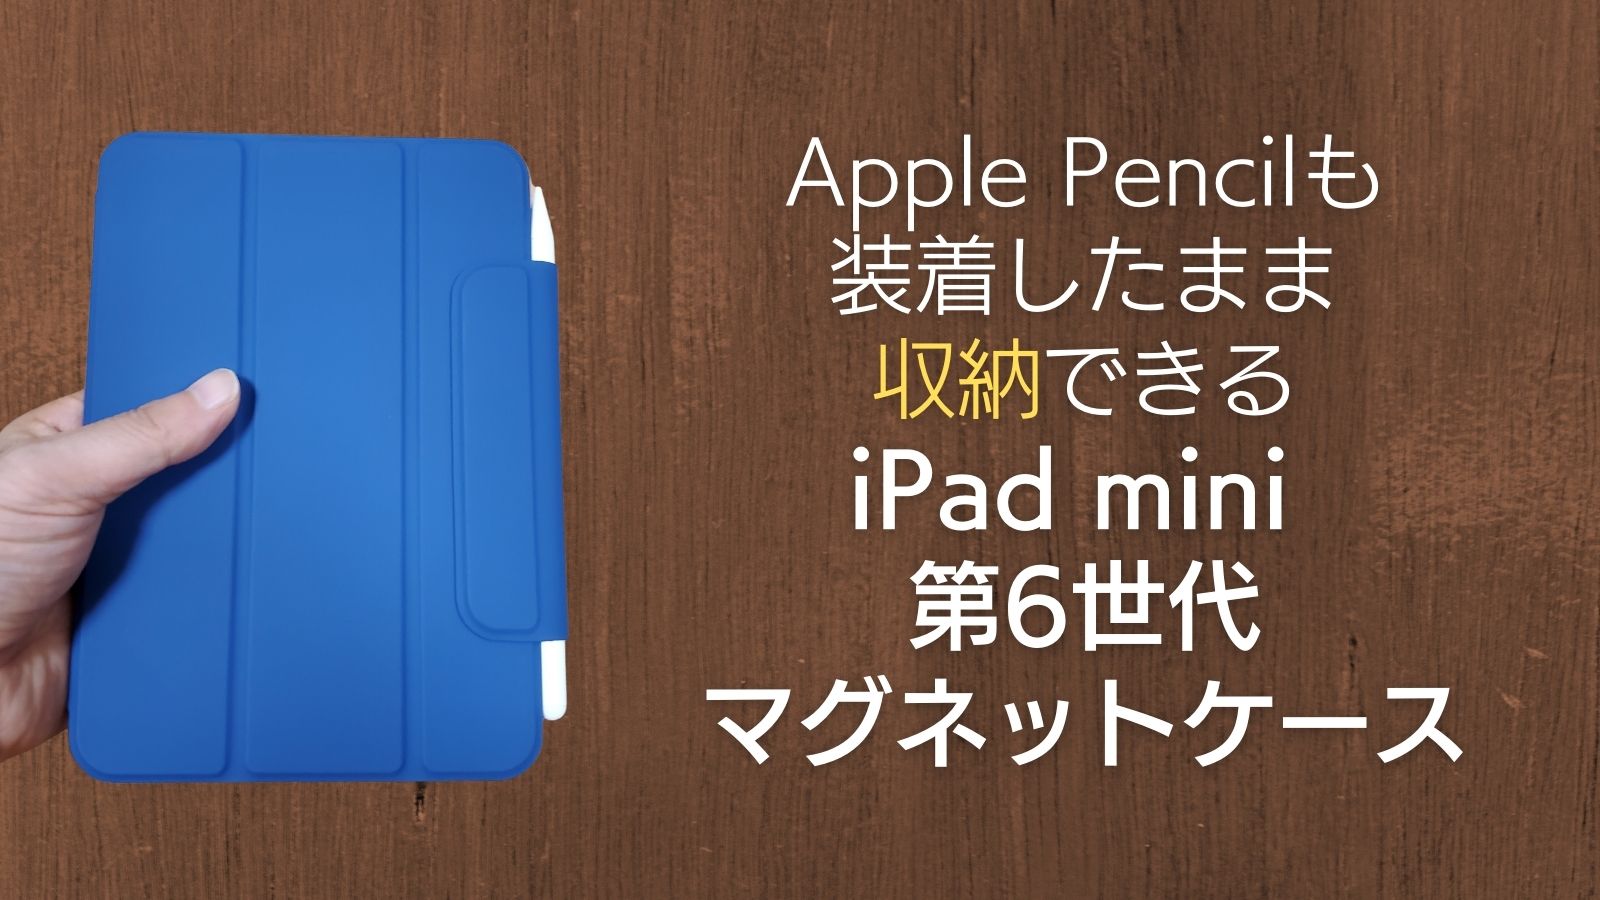 レビュー】3,000円弱のApple Pencilを収納できるiPad mini 第6世代の 